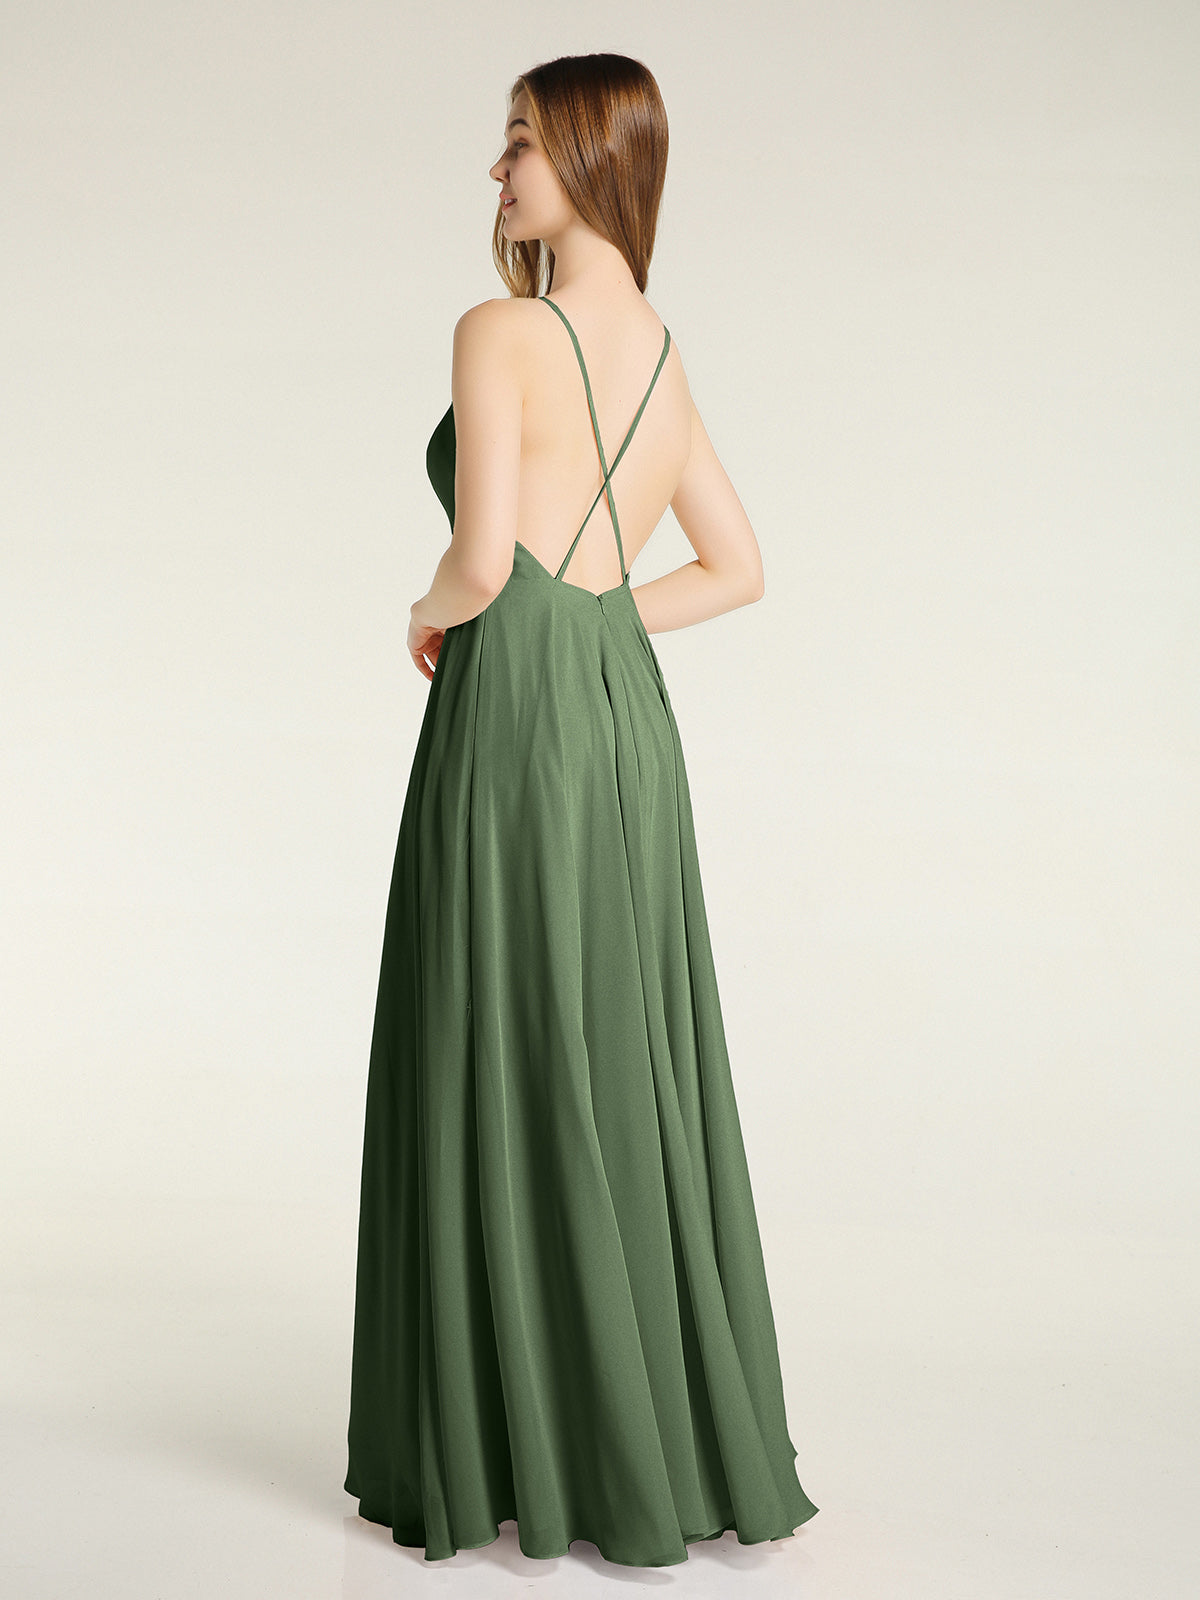 Vestidos sencillos de dama de honor de chiffon con espalda baja Verde Oliva